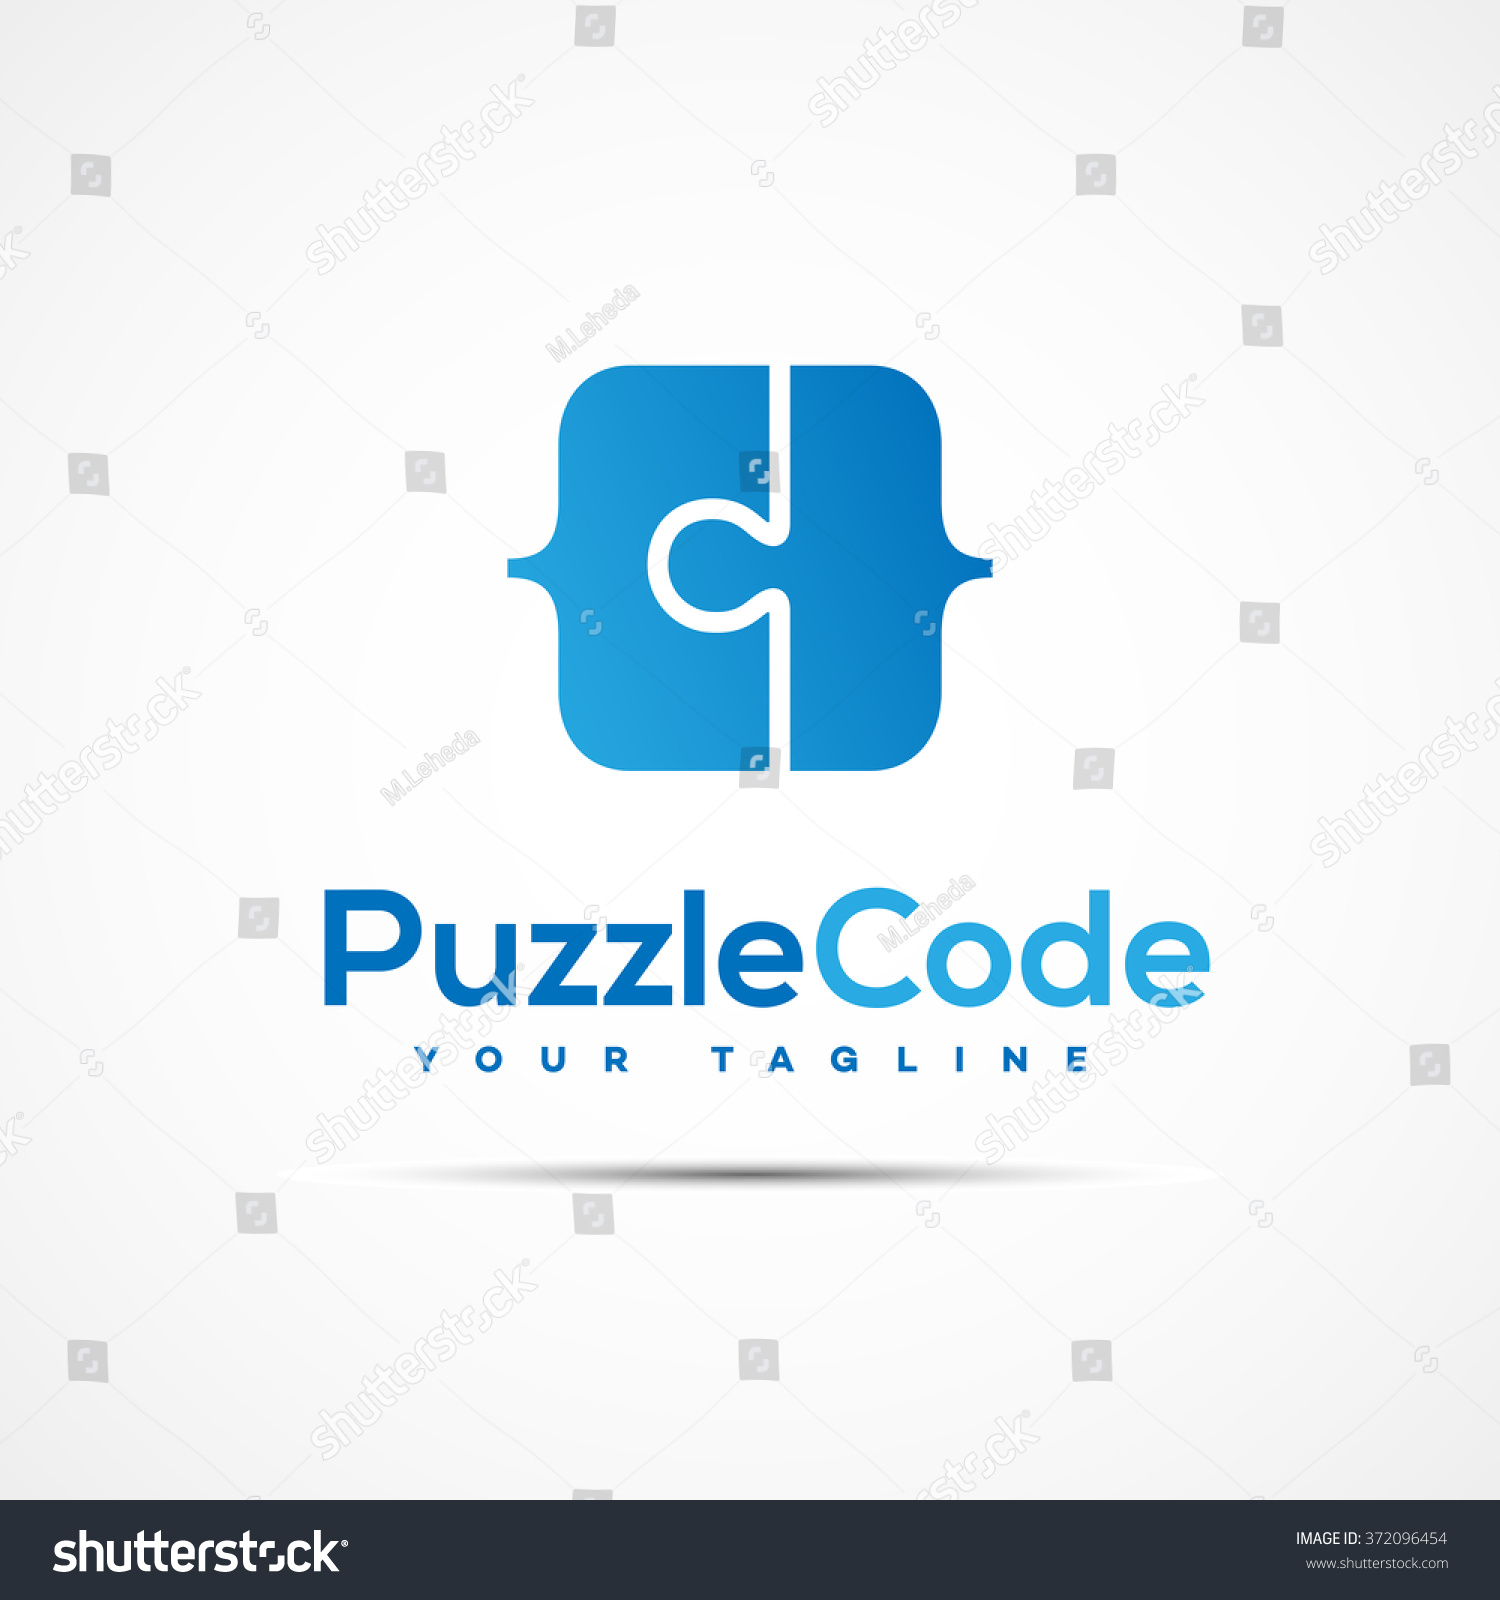 Download Edit Vectors Free Online - Puzzle code | Shutterstock Editor